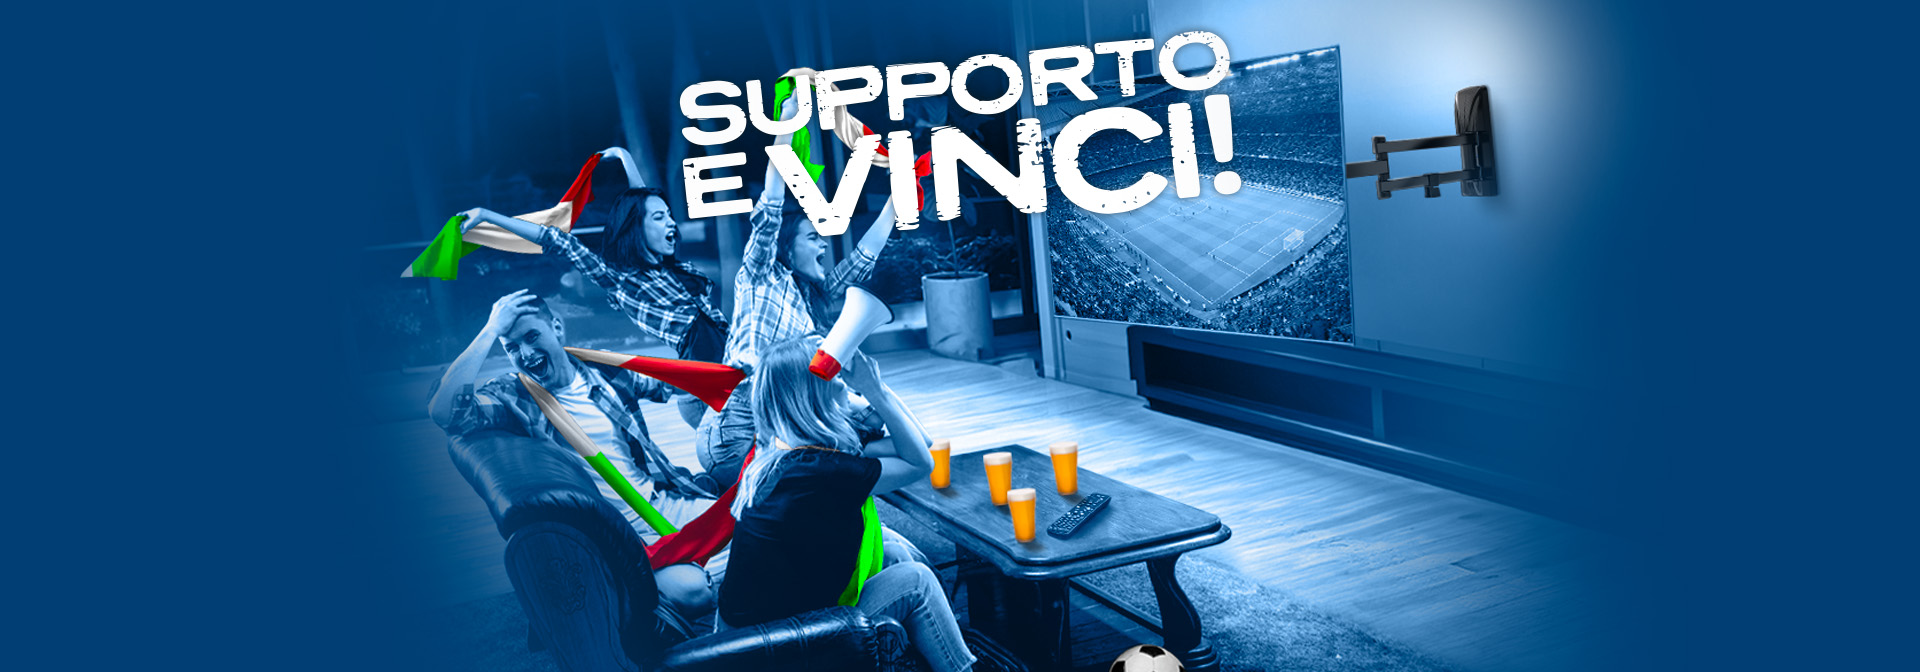 Supporto e Vinci!